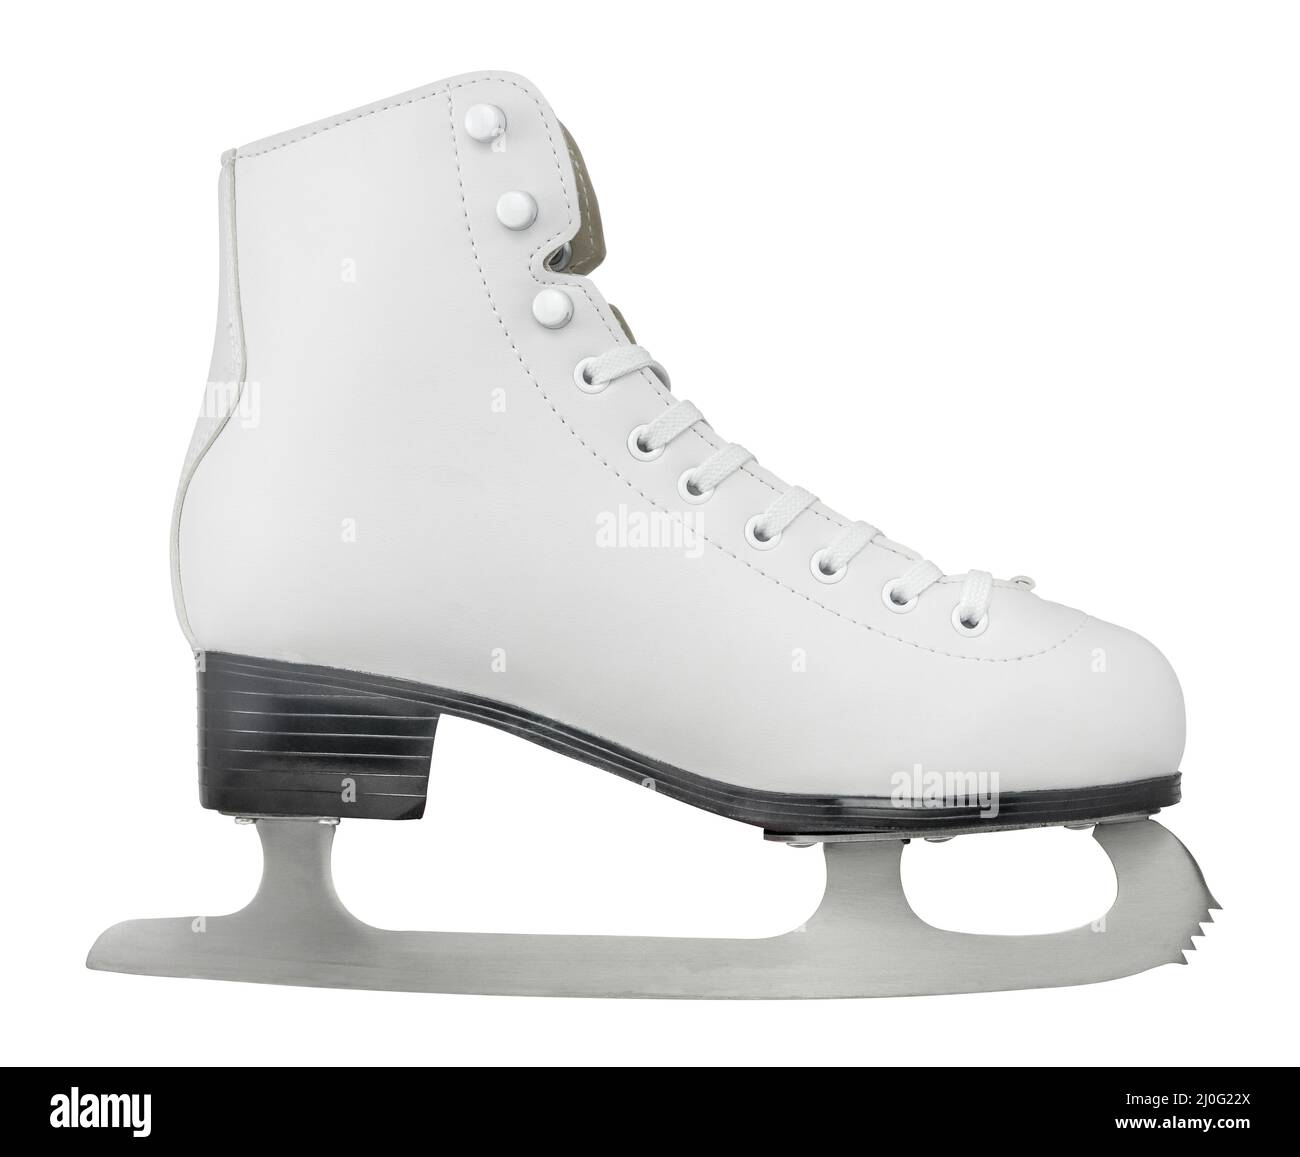 Chaussure de patinage sur glace isolée Banque D'Images